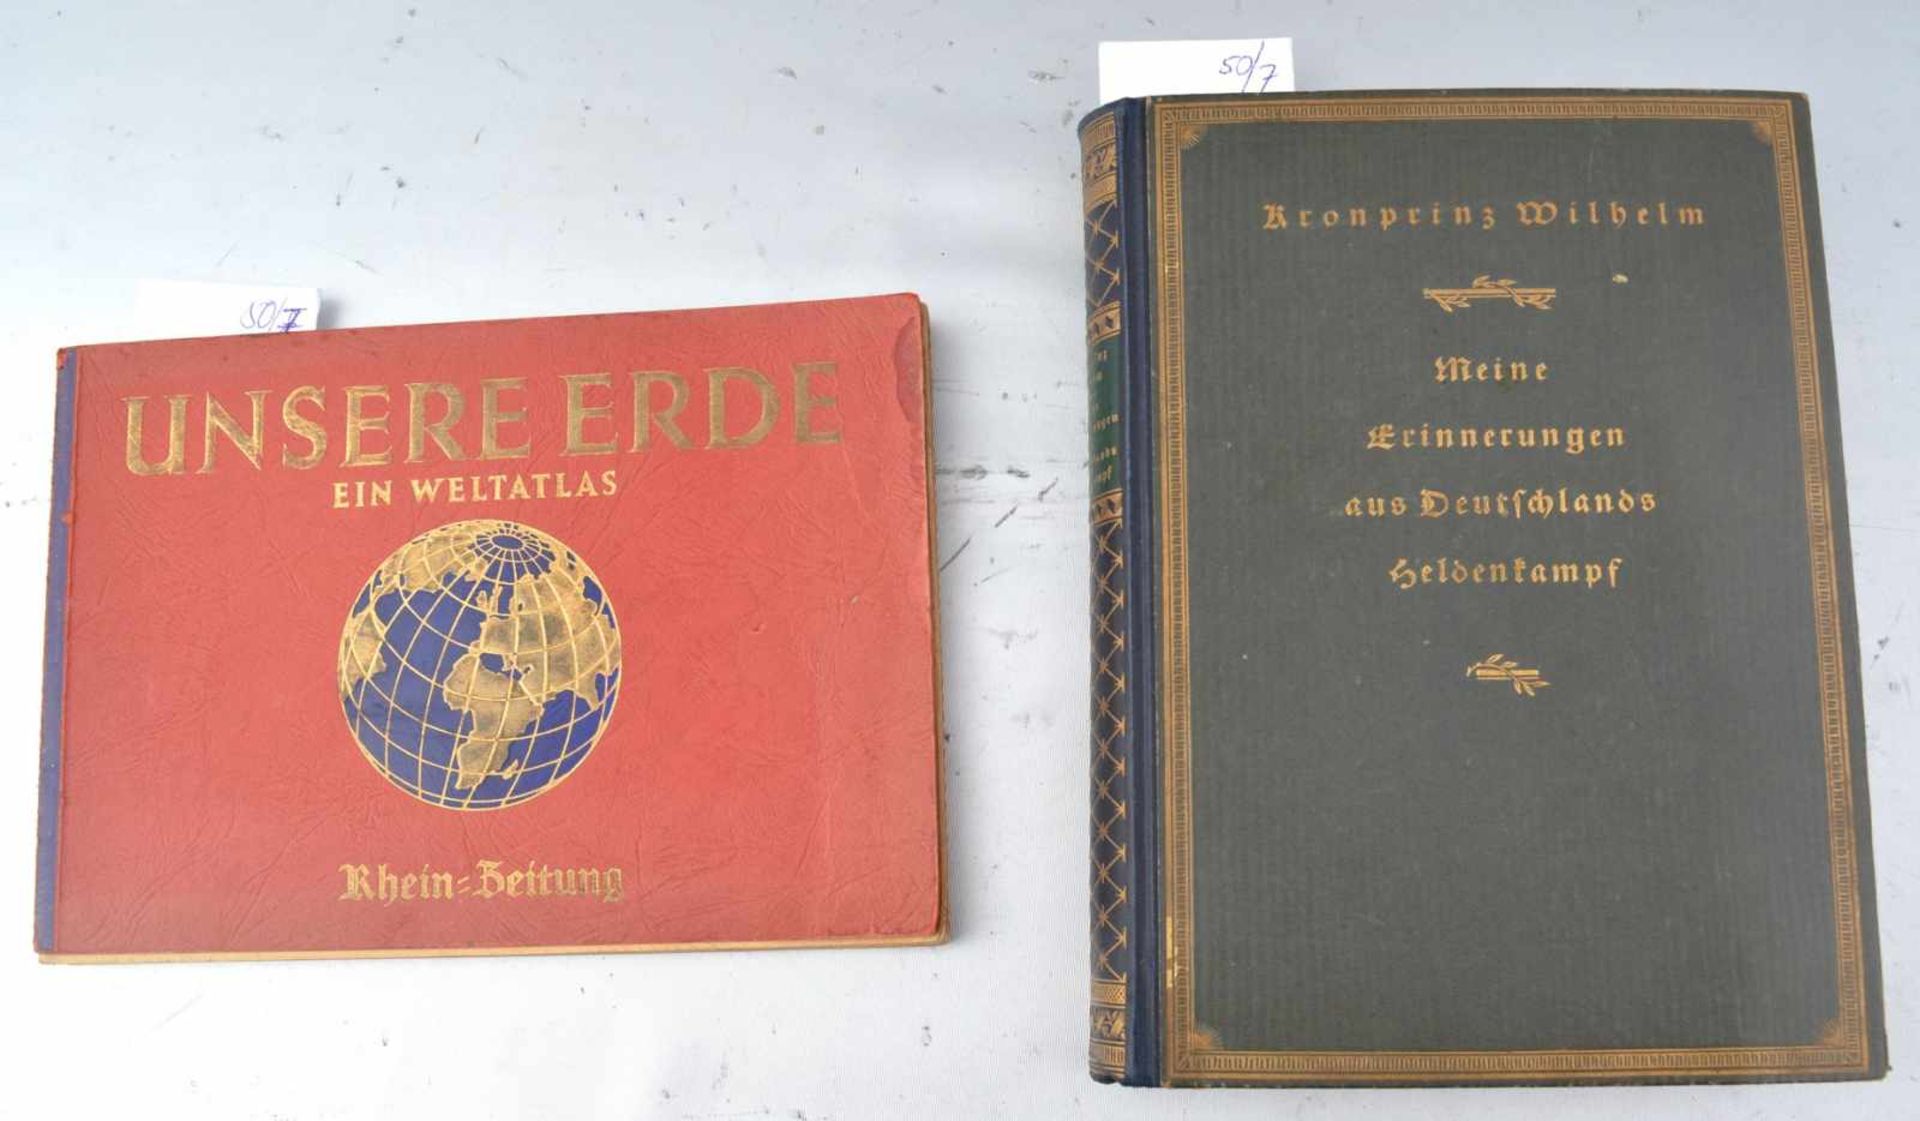 Zwei Bücher "Meine Erinnerungen aus Deutschlands Heldenkampf" von Kronprinz Wilhelm und "Unsere